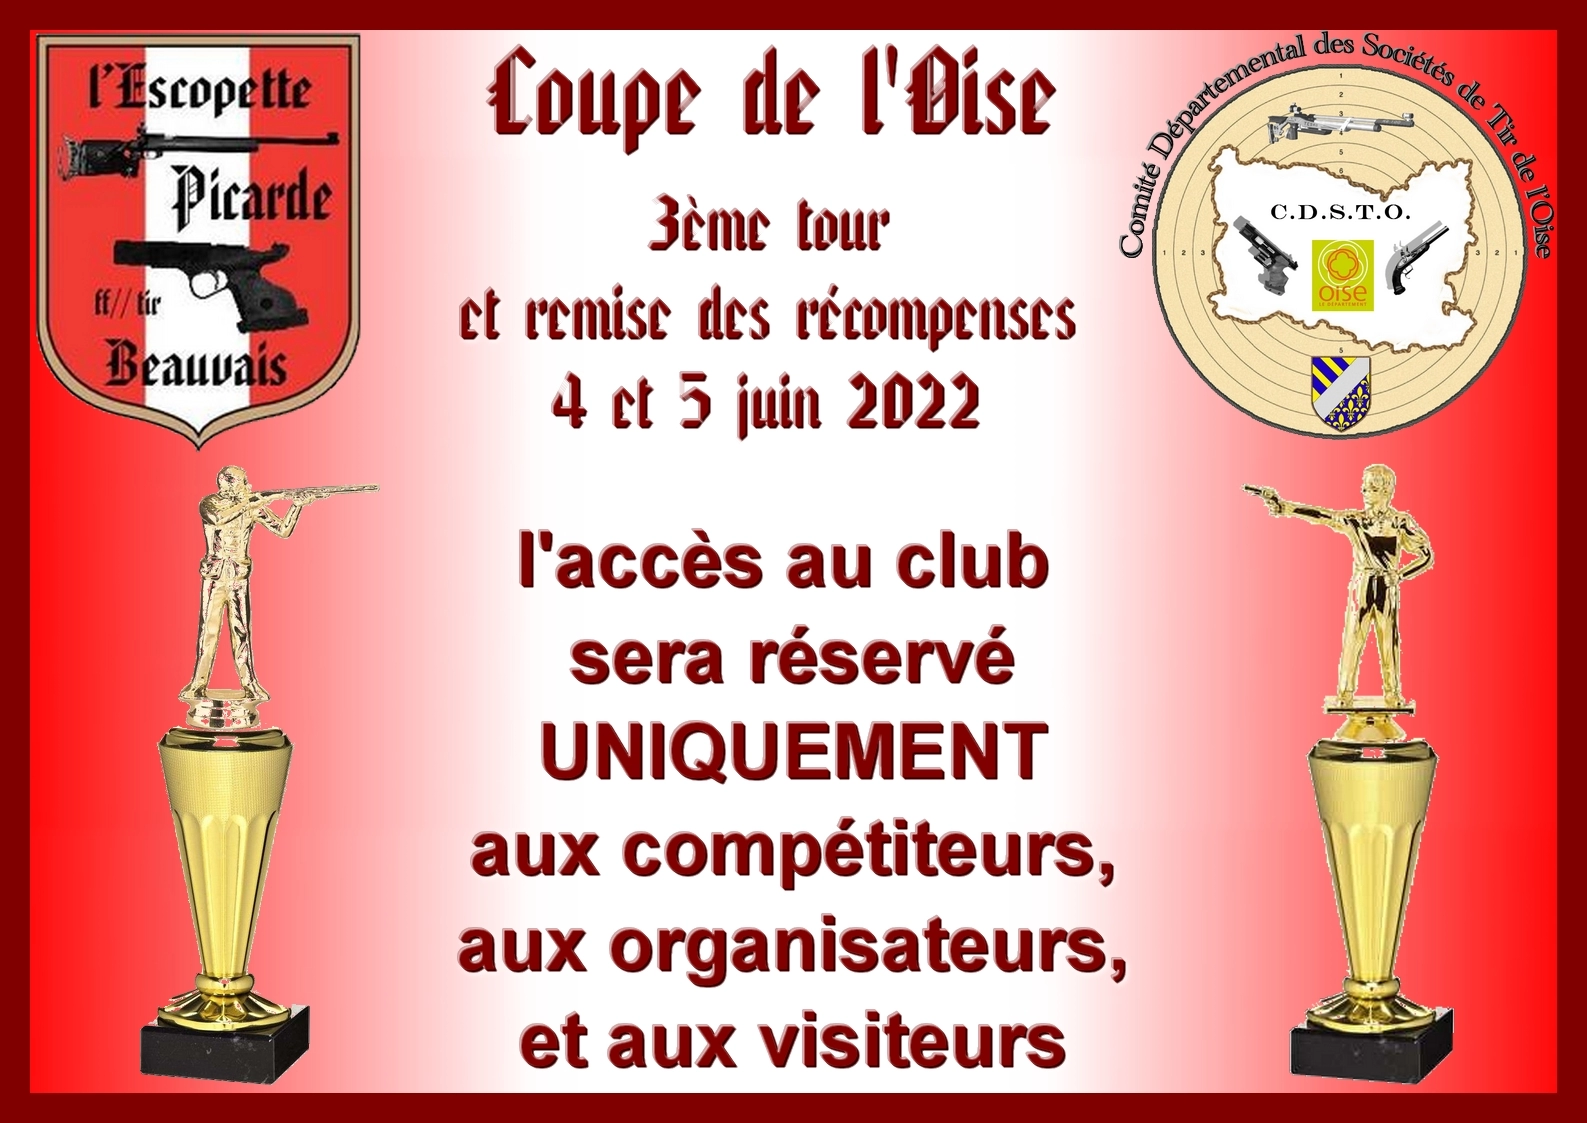 fermeture du club pour la Coupe de l'Oise 2022